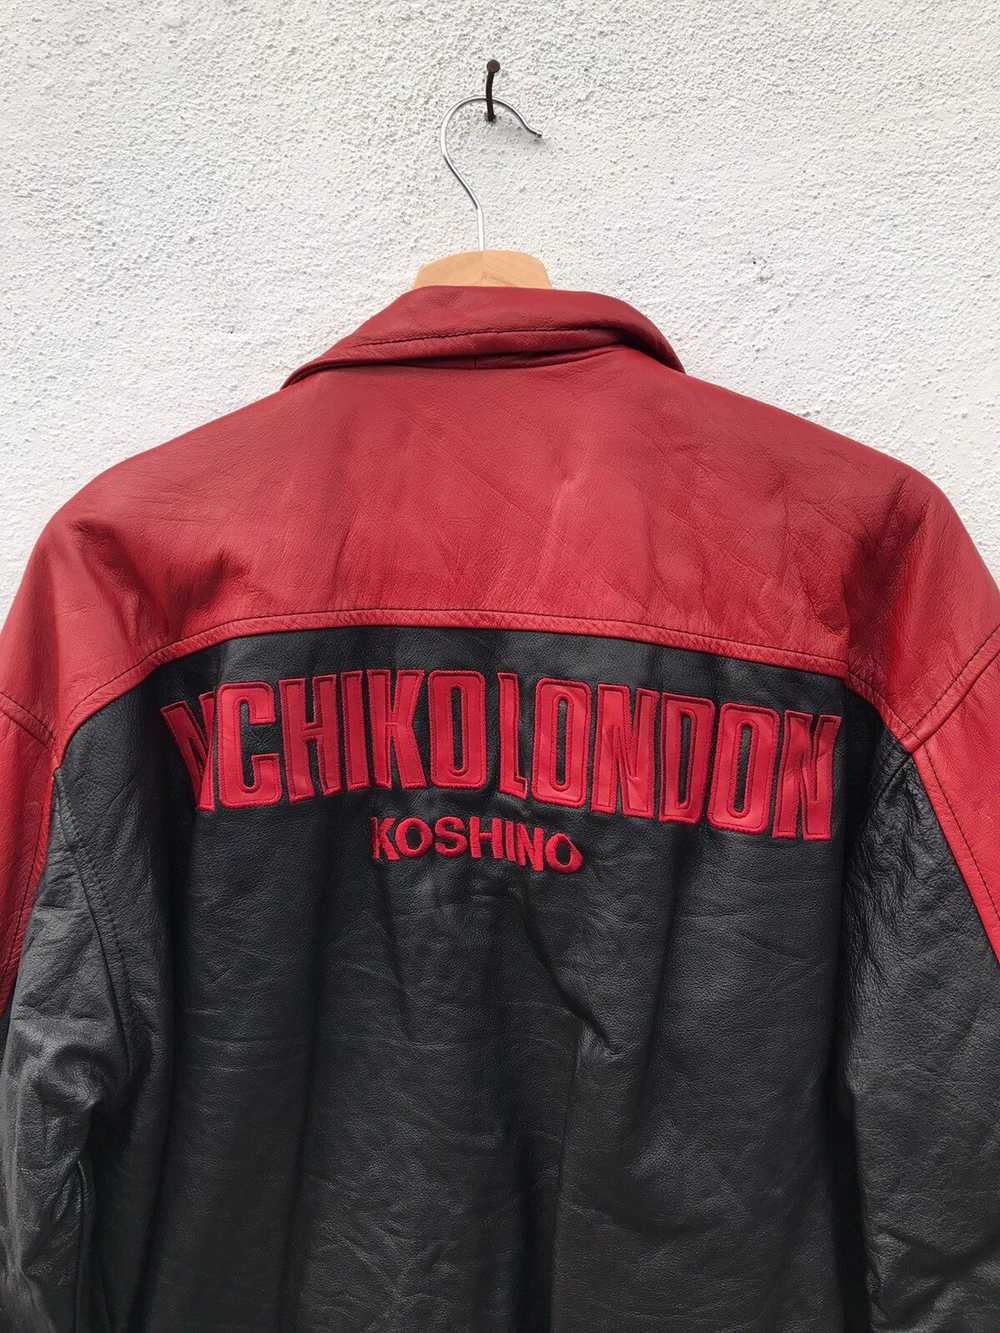 Leather Jacket × Michiko Koshino London × Vintage… - image 11